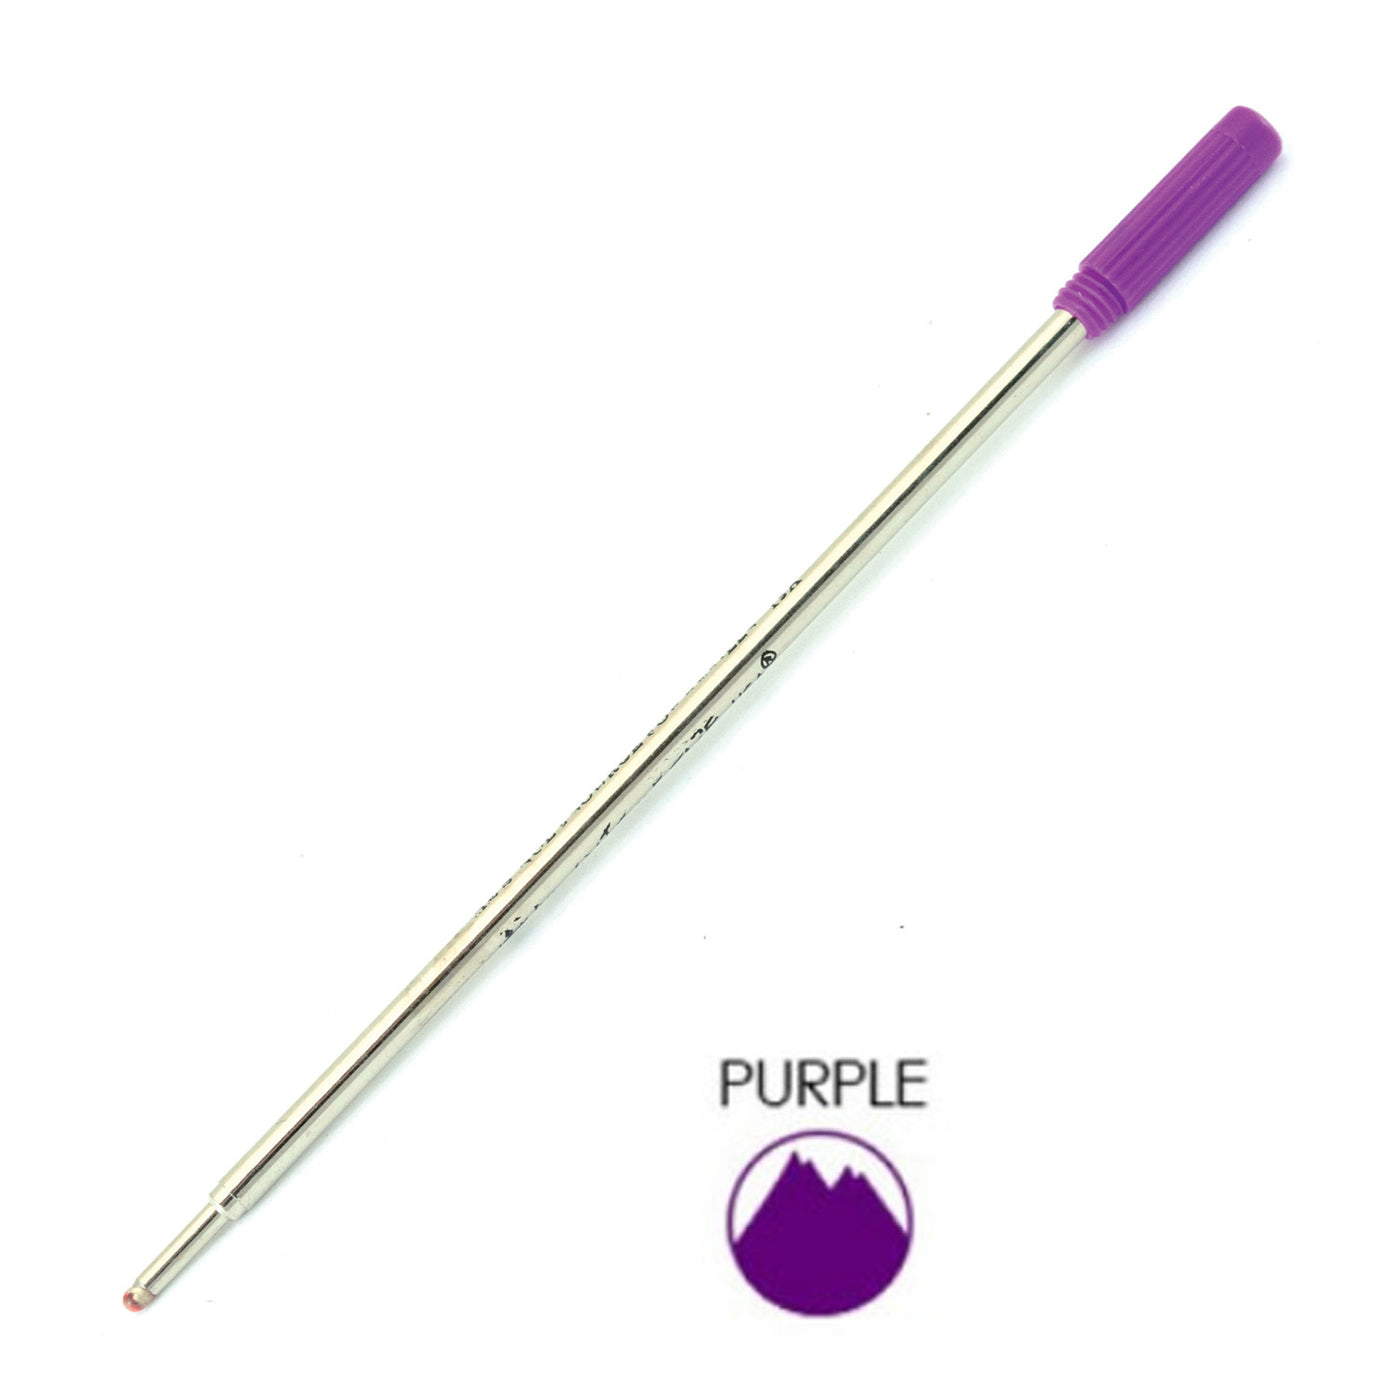 Monteverde Ball Pen Refill for Cross - Medium - Purple - Pack of 2 3